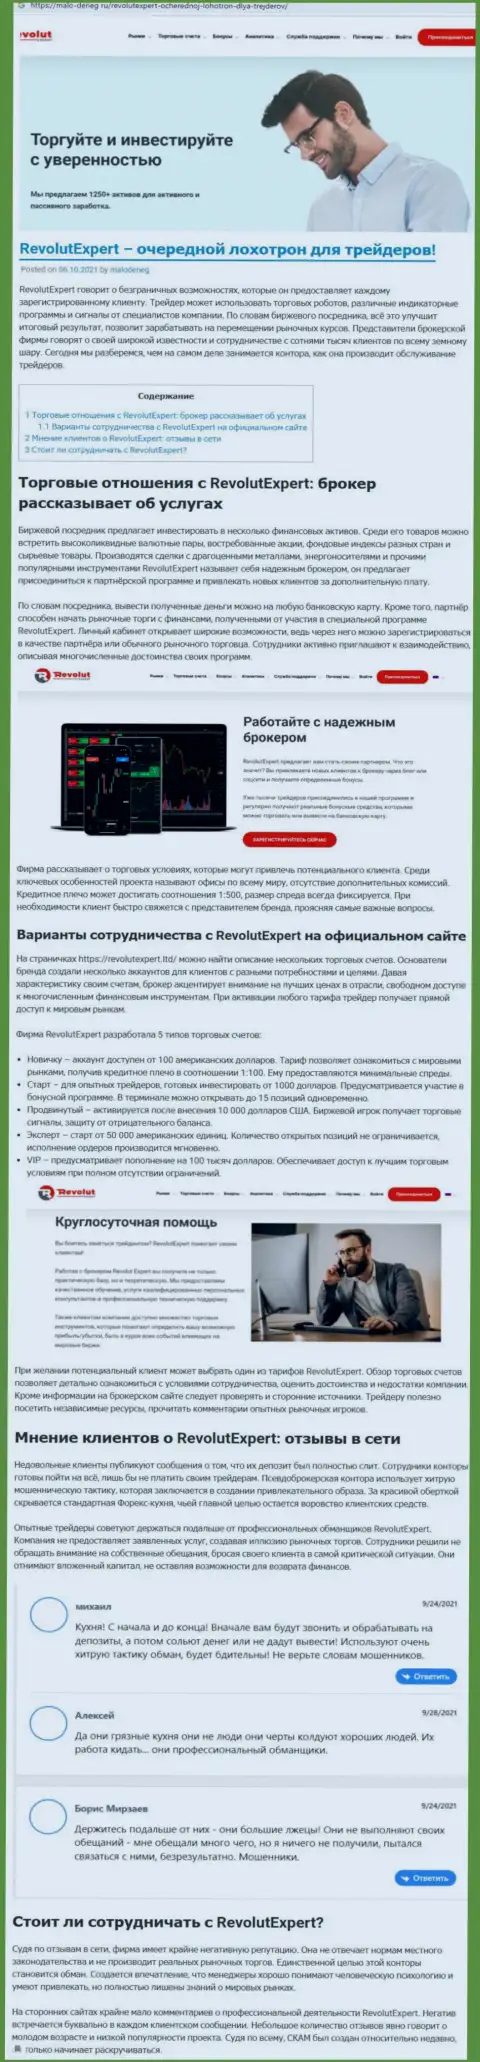 Как промышляет internet-разводила Сангин Солюшинс ЛТД - публикация о мошеннических действиях конторы